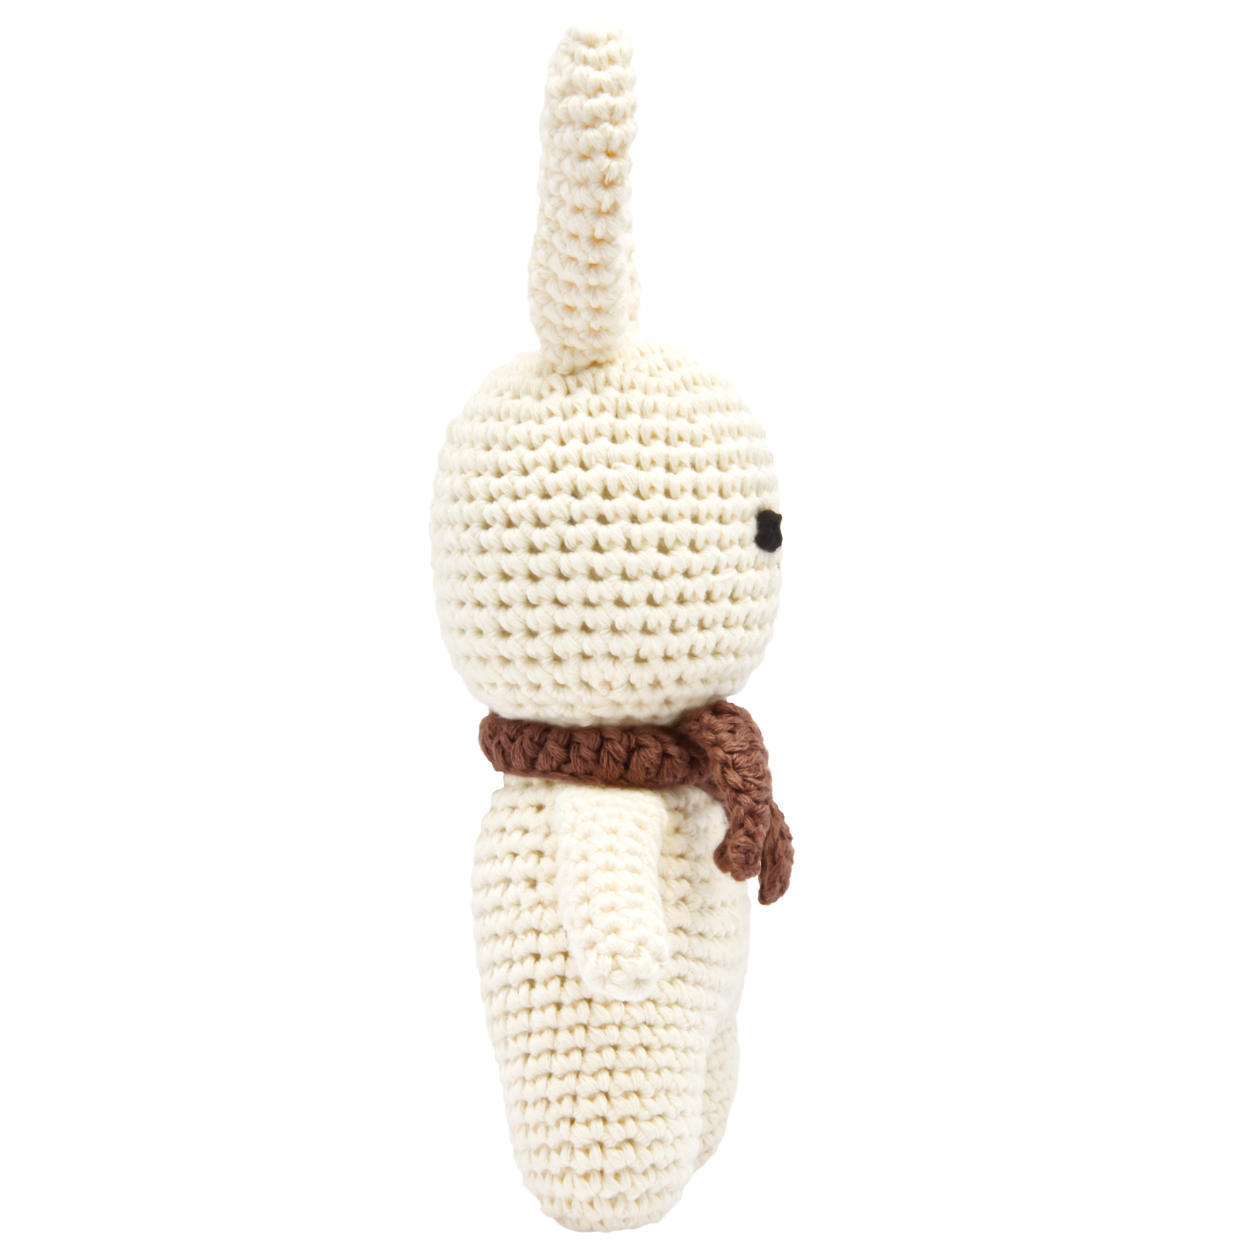 Handgestrickter Hase gehäkelt aus Baumwolle Spielzeug 18 cm